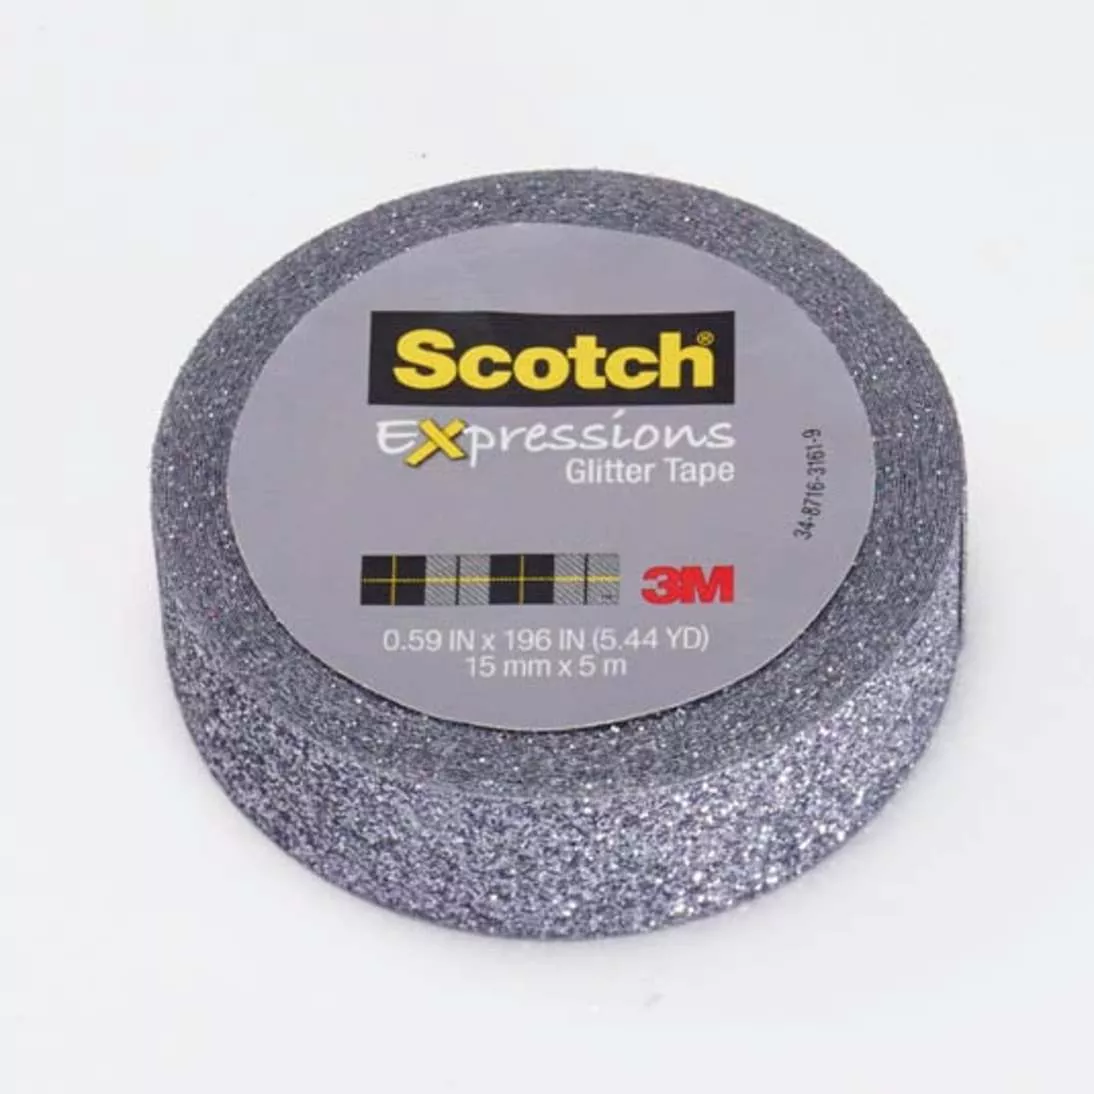 Scotch® Expressions Glitter Tape C514-PLT, .59 in x 196 in (15 mm x 5 m)
Platinum Glitter